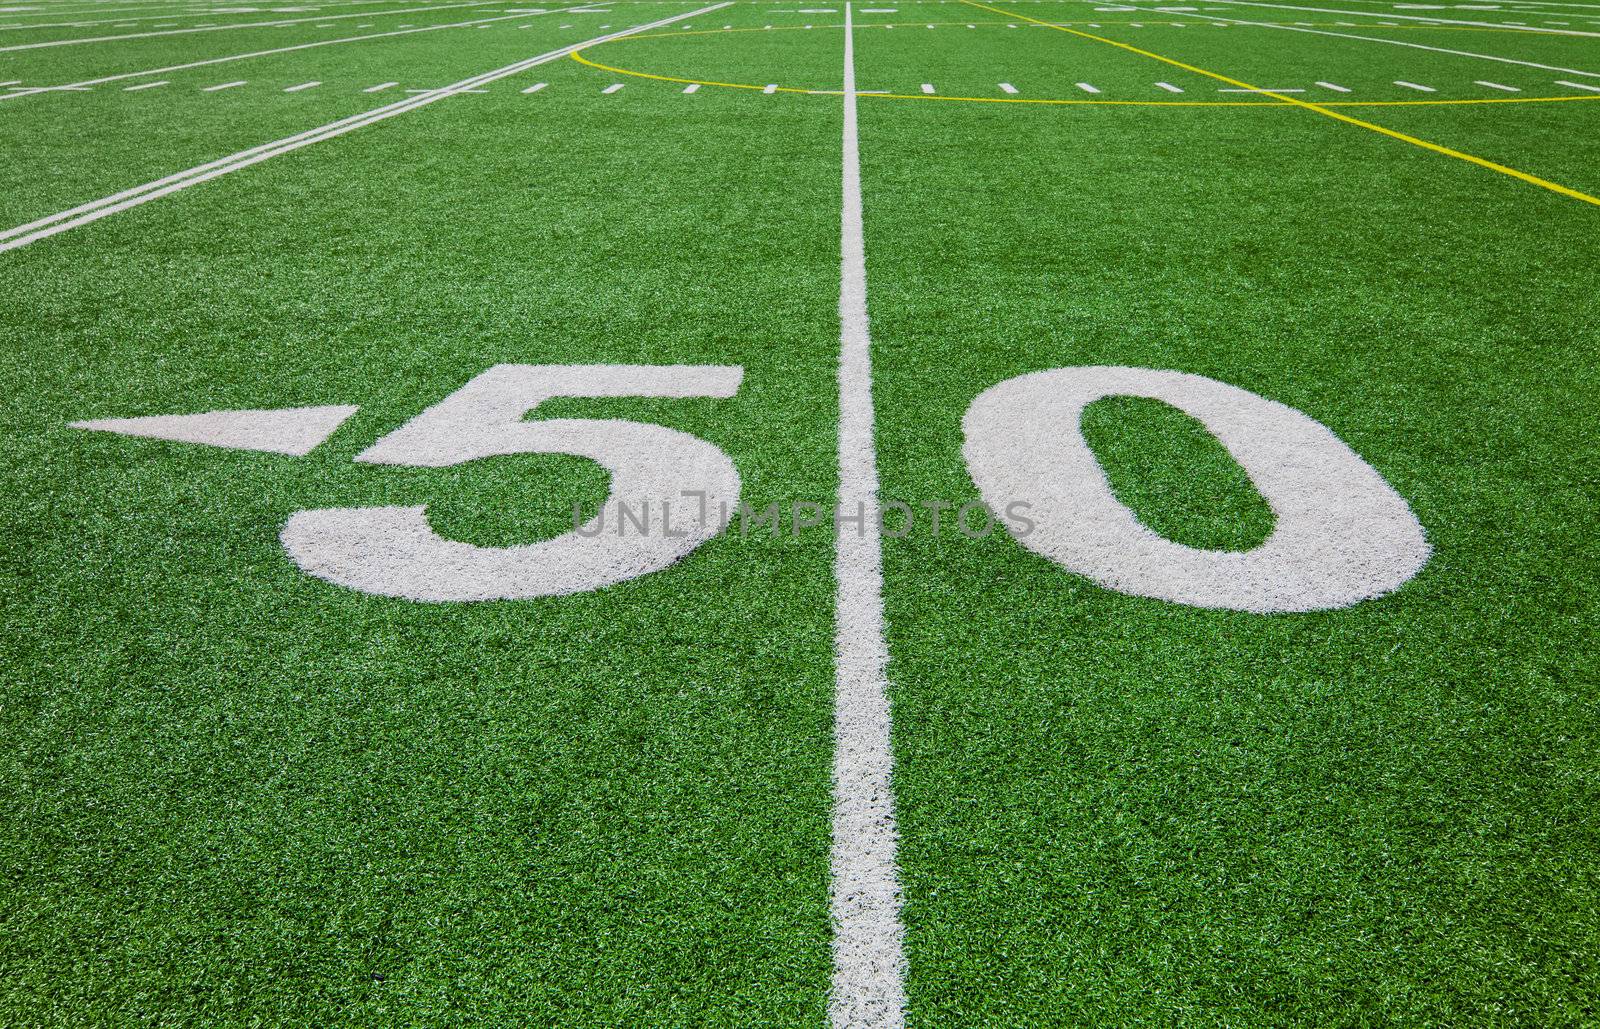 fifty yard line - football field
 by aetb